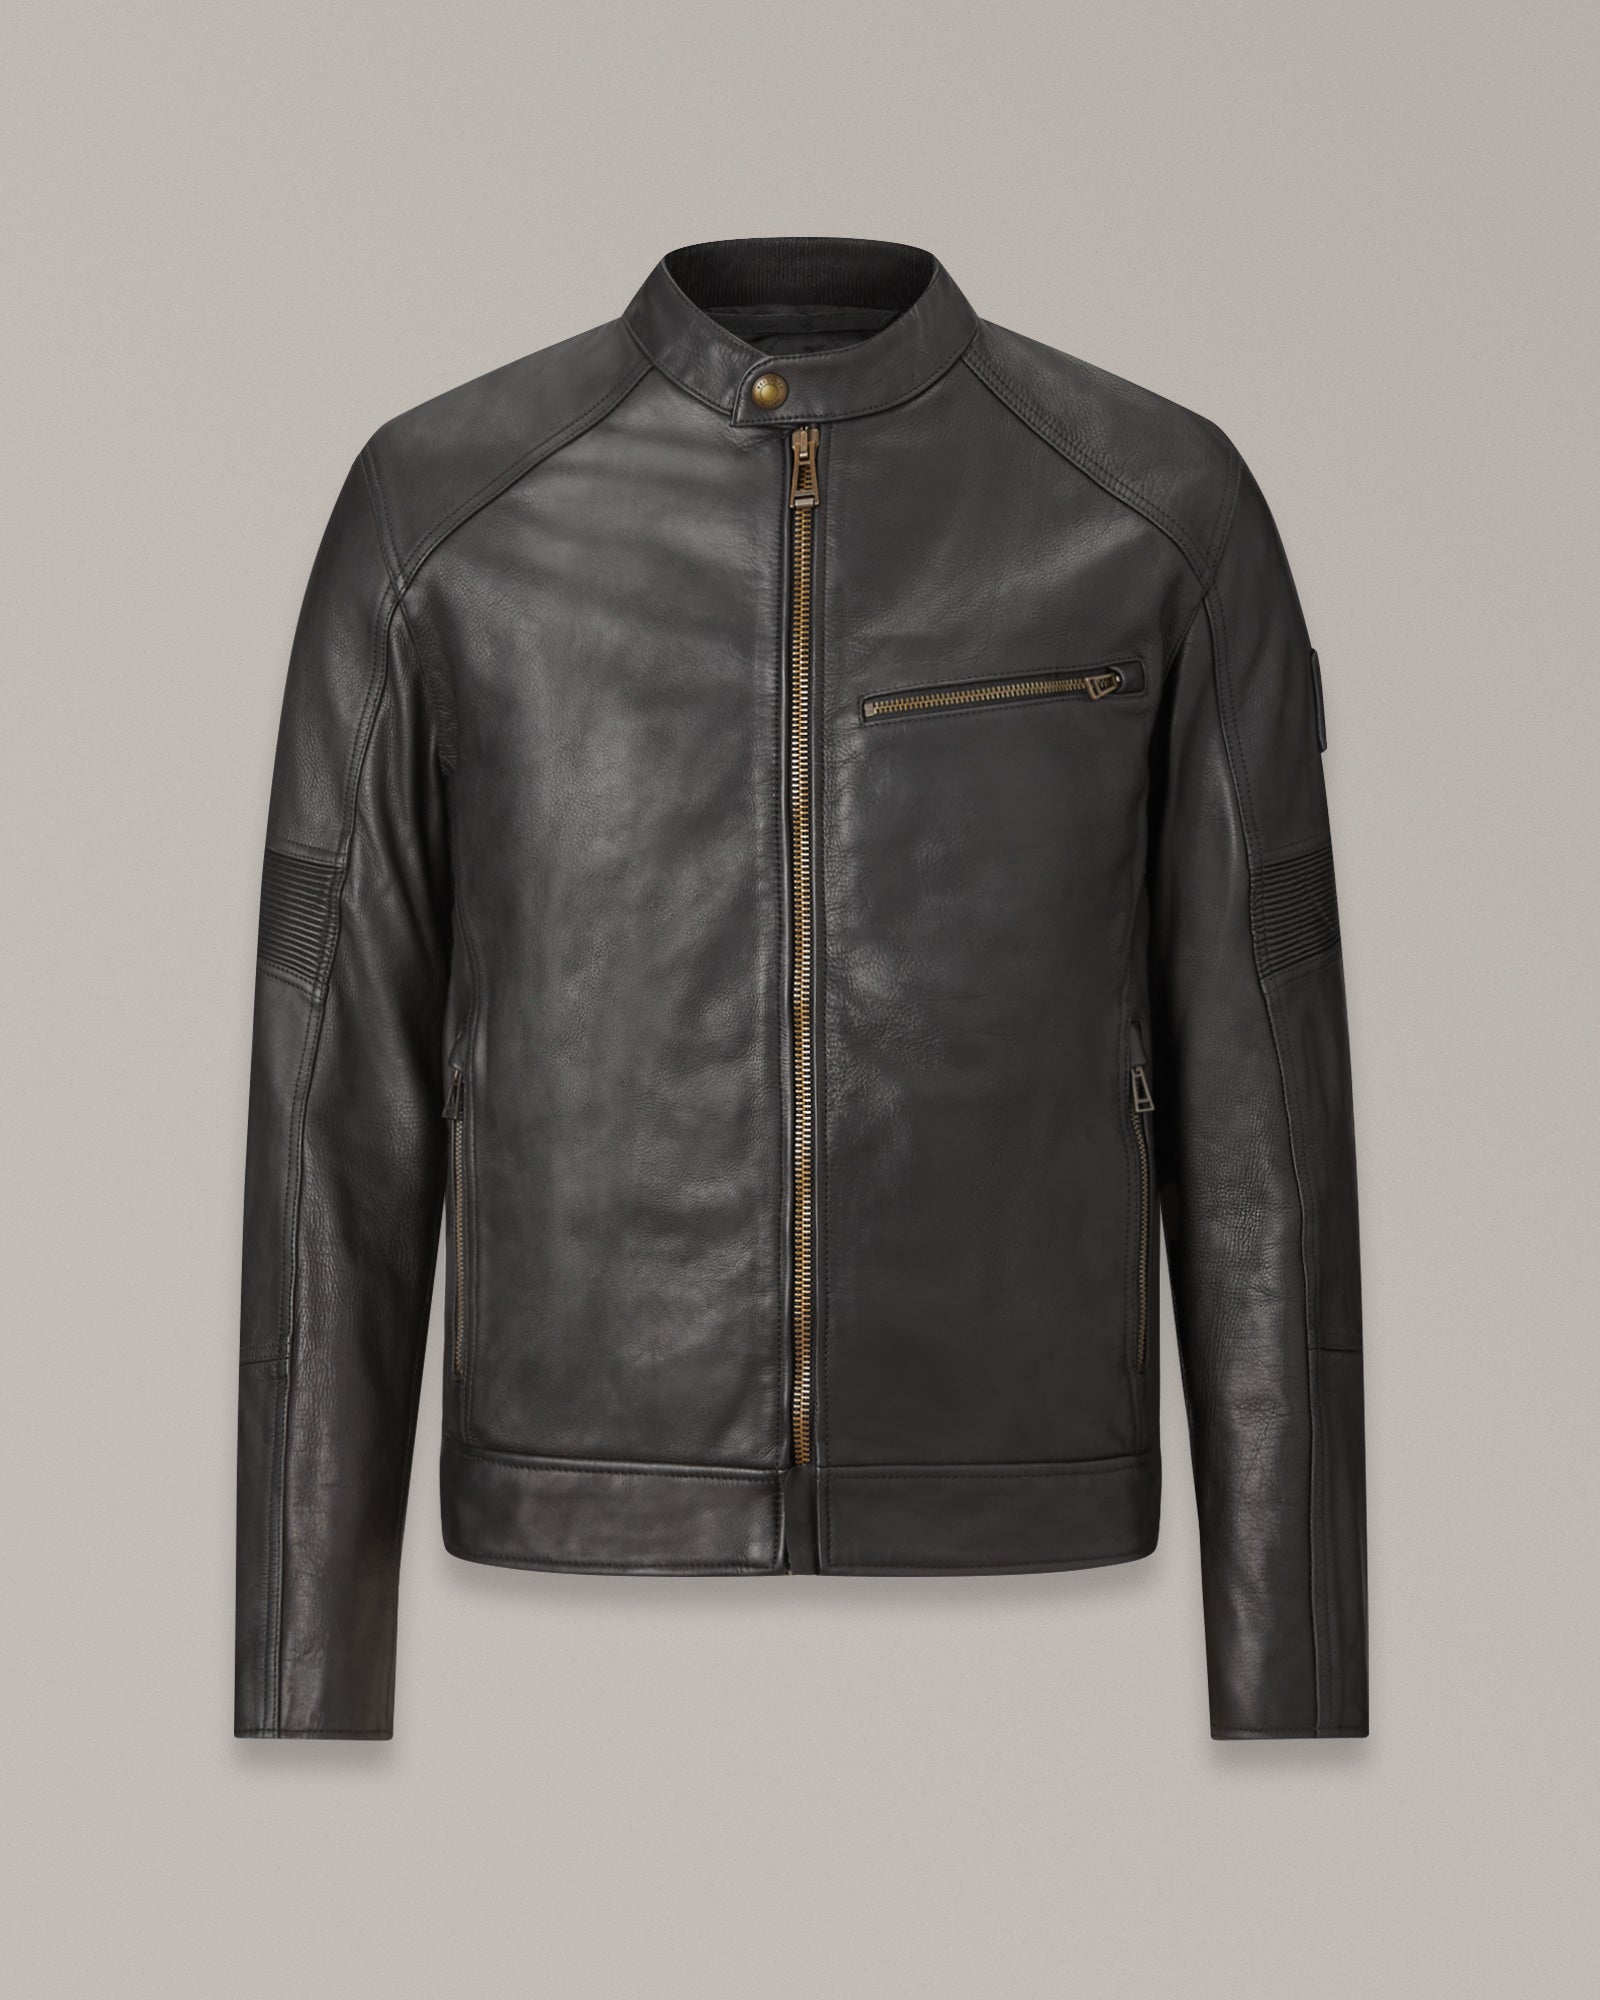 Men's Washed Leather Vanguard Jacket in Black | Belstaff US